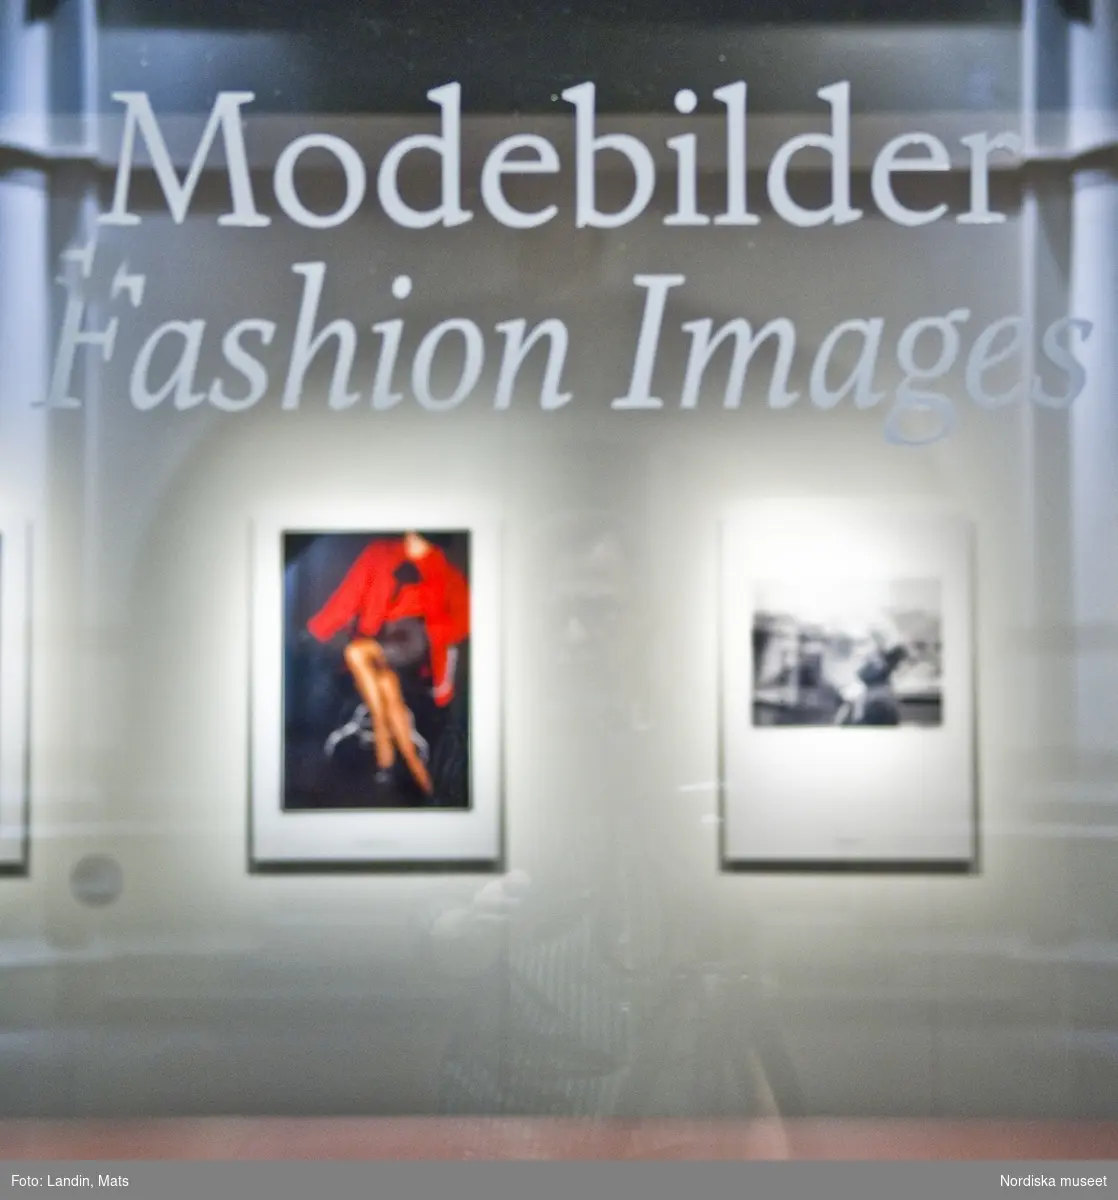 Nordiska museet utställning Modebilder.
2008
Modebilder i nytt ljus på Nordiska museet